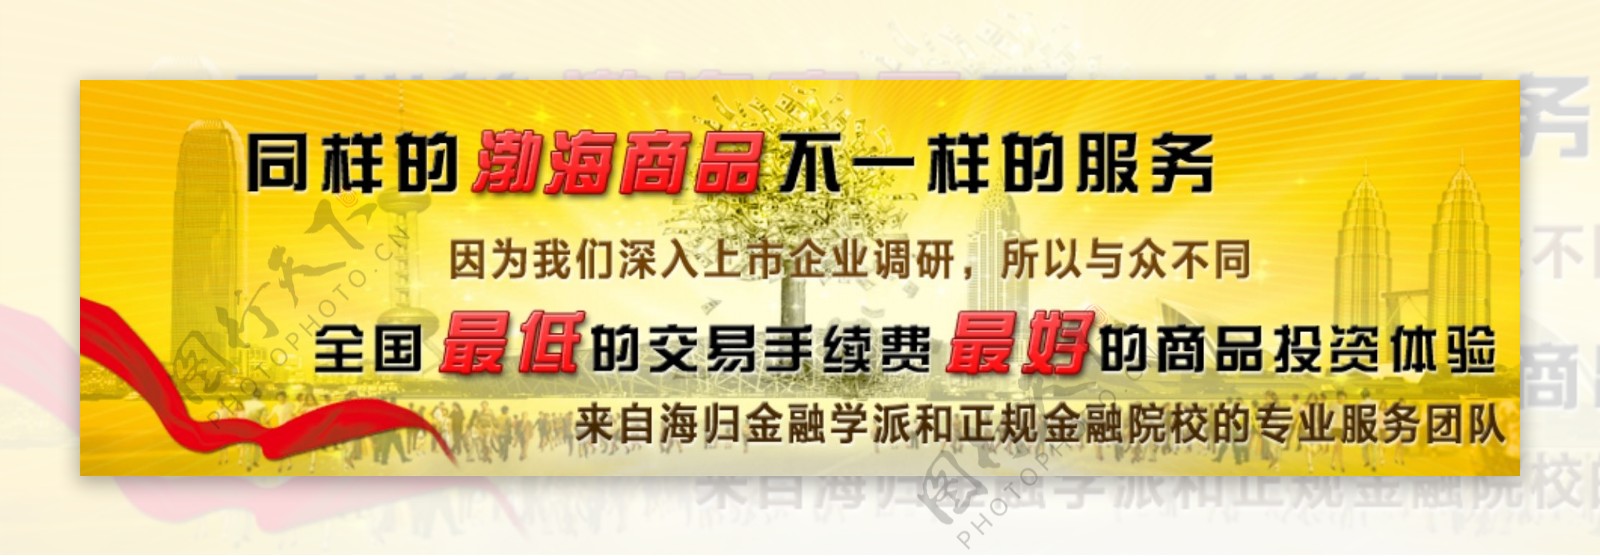 网站banner图片